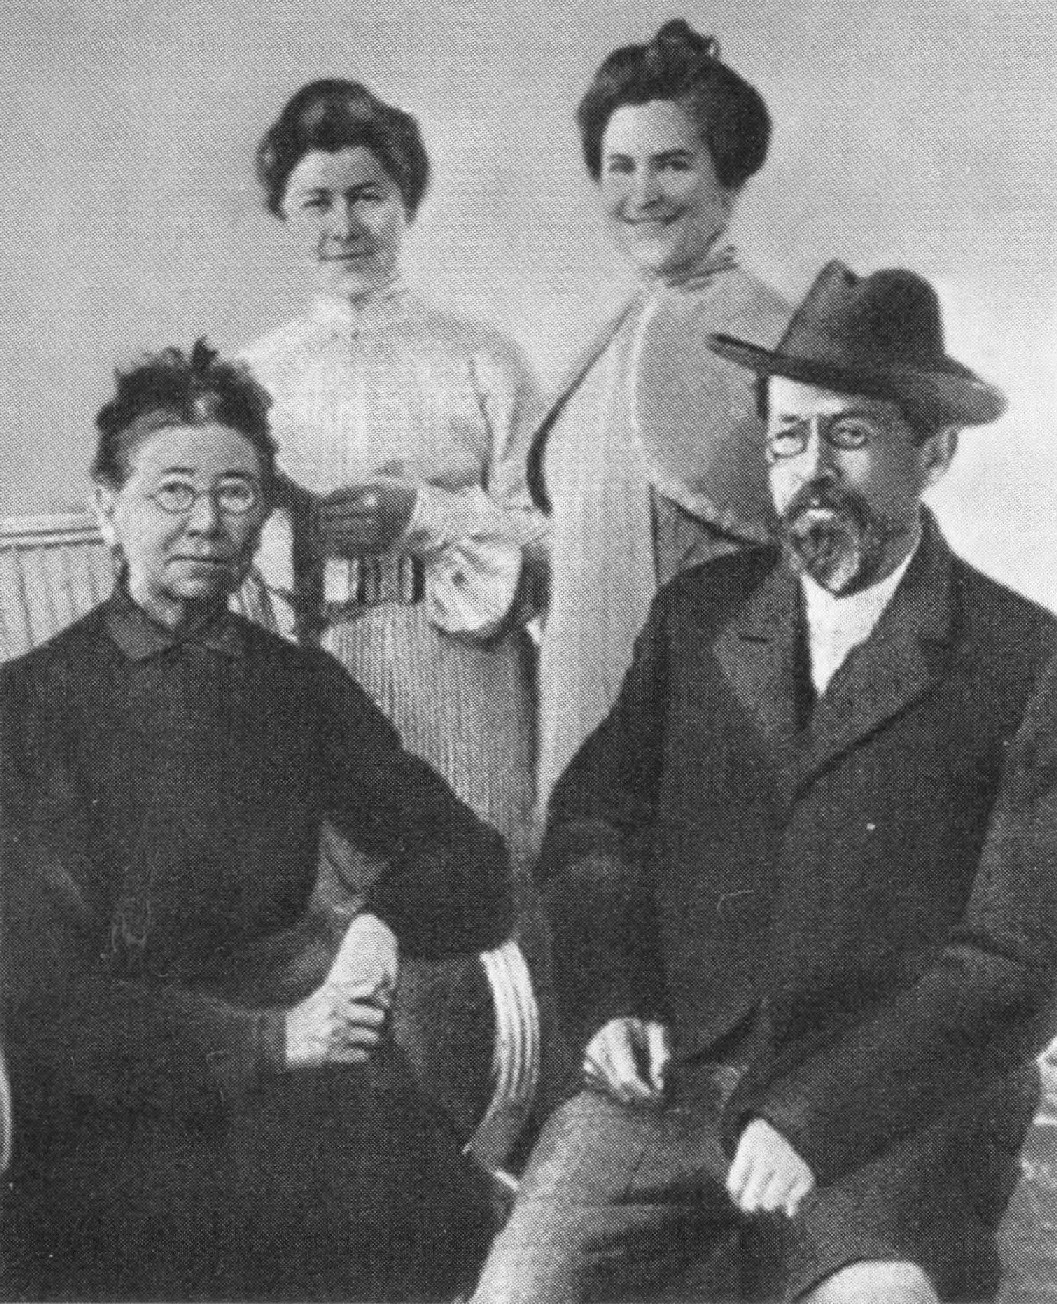 Стоят: М.П. Чехова, О.Л. Книппер-Чехова, сидят: Е.Я. Чехова, Антон Павлович Чехов. Ялта, 1902 г.